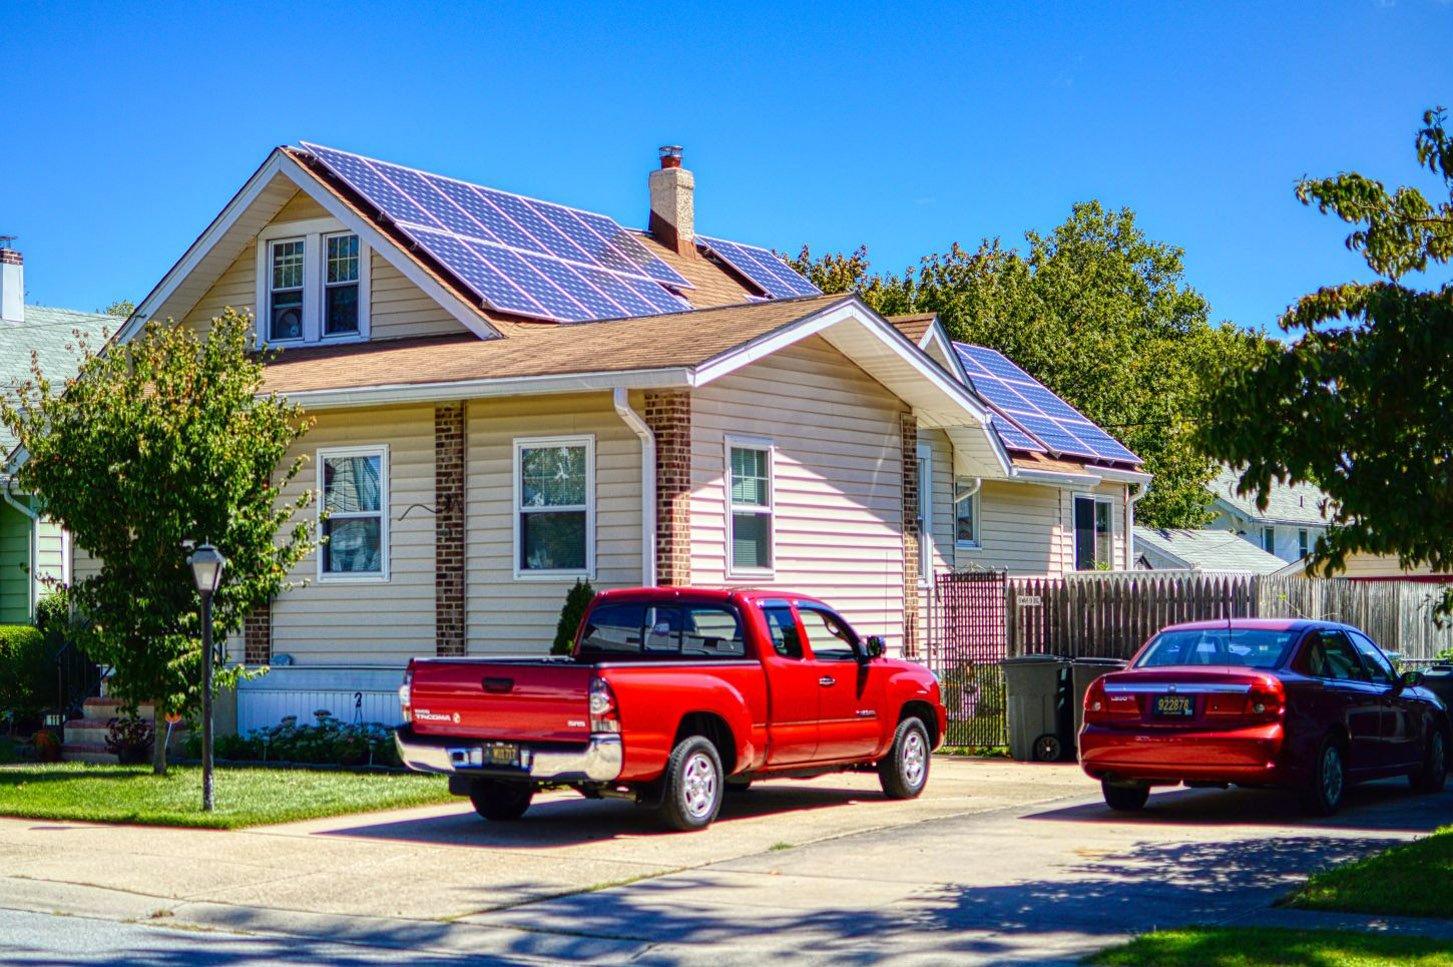 Auch in den USA sieht man immer häufiger Solarmodule auf dem Dach